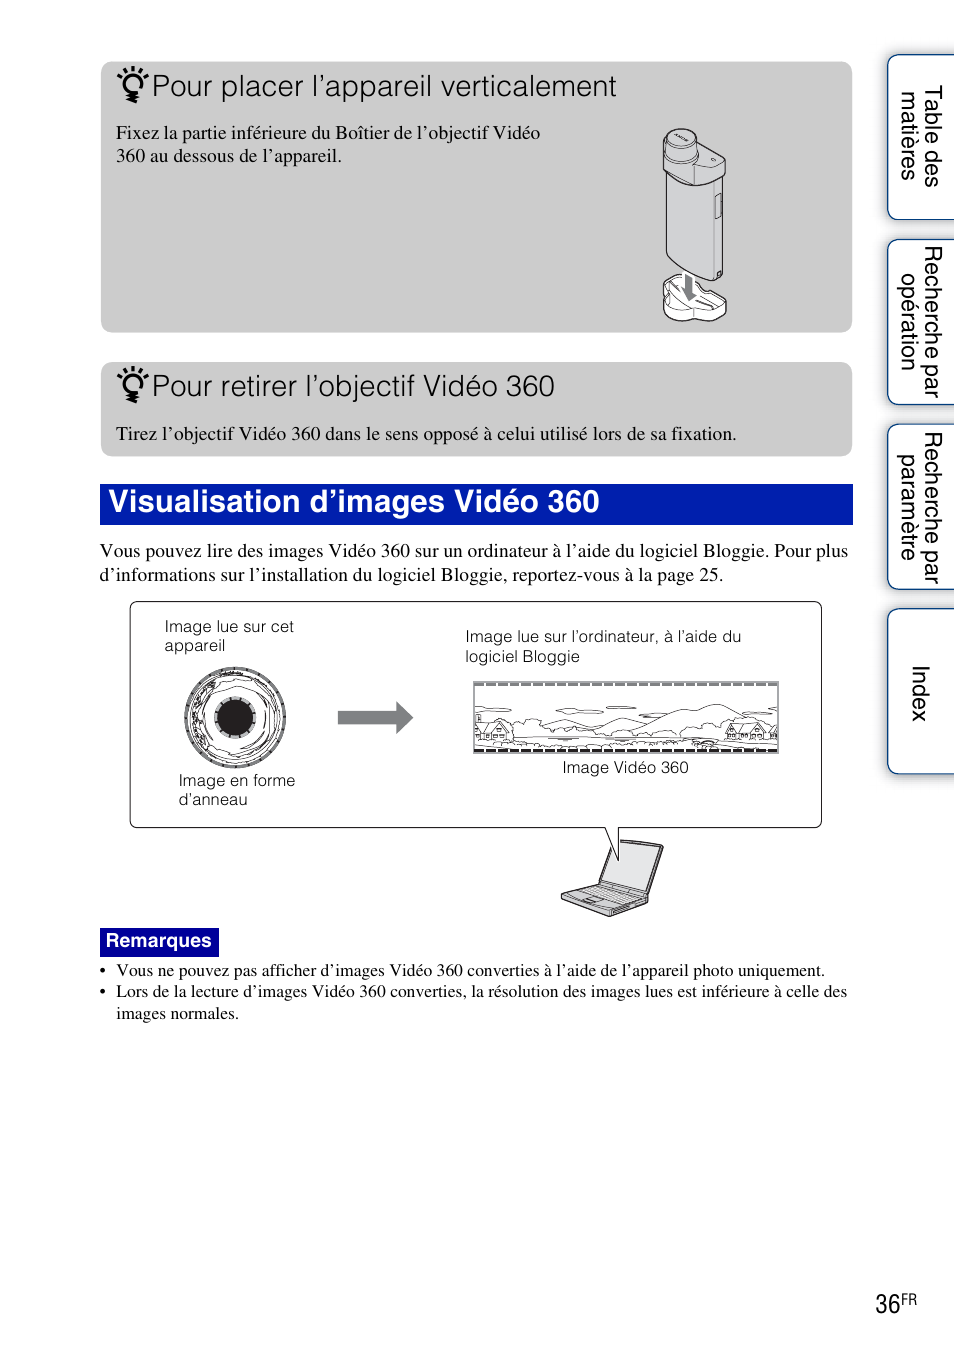 Visualisation d’images vidéo 360, Pour placer l’appareil verticalement, Pour retirer l’objectif vidéo 360 | Sony bloggie MHS-TS20 Manuel d'utilisation | Page 36 / 75